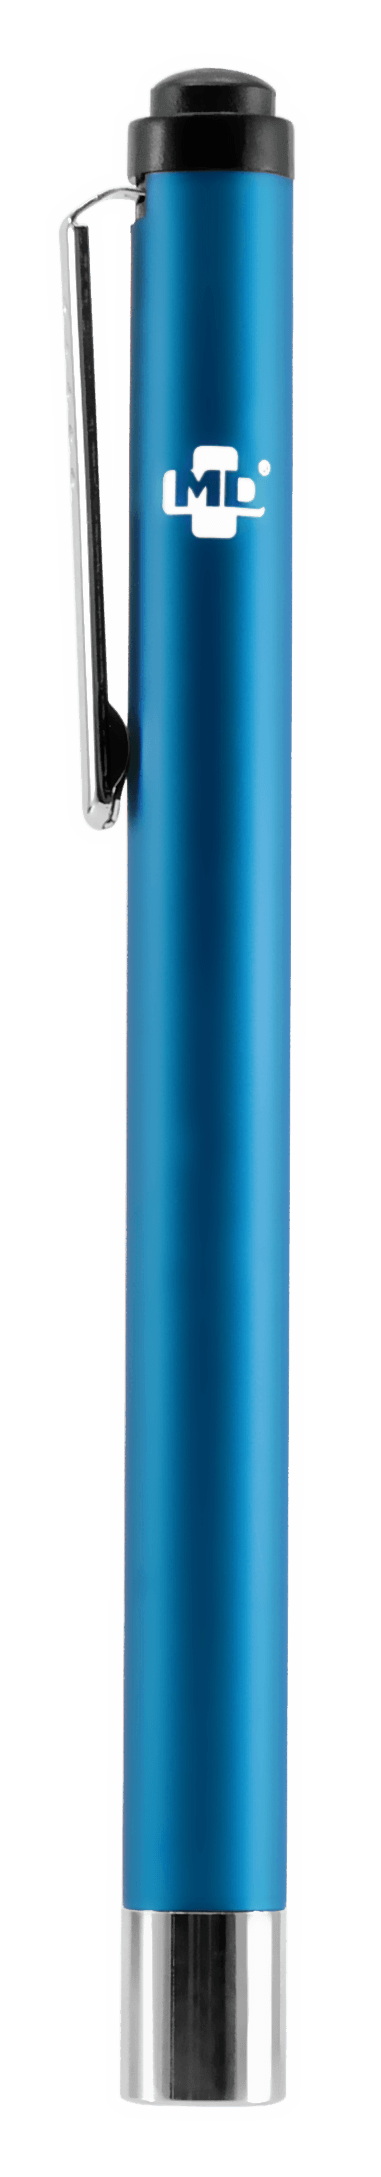 Azul-01